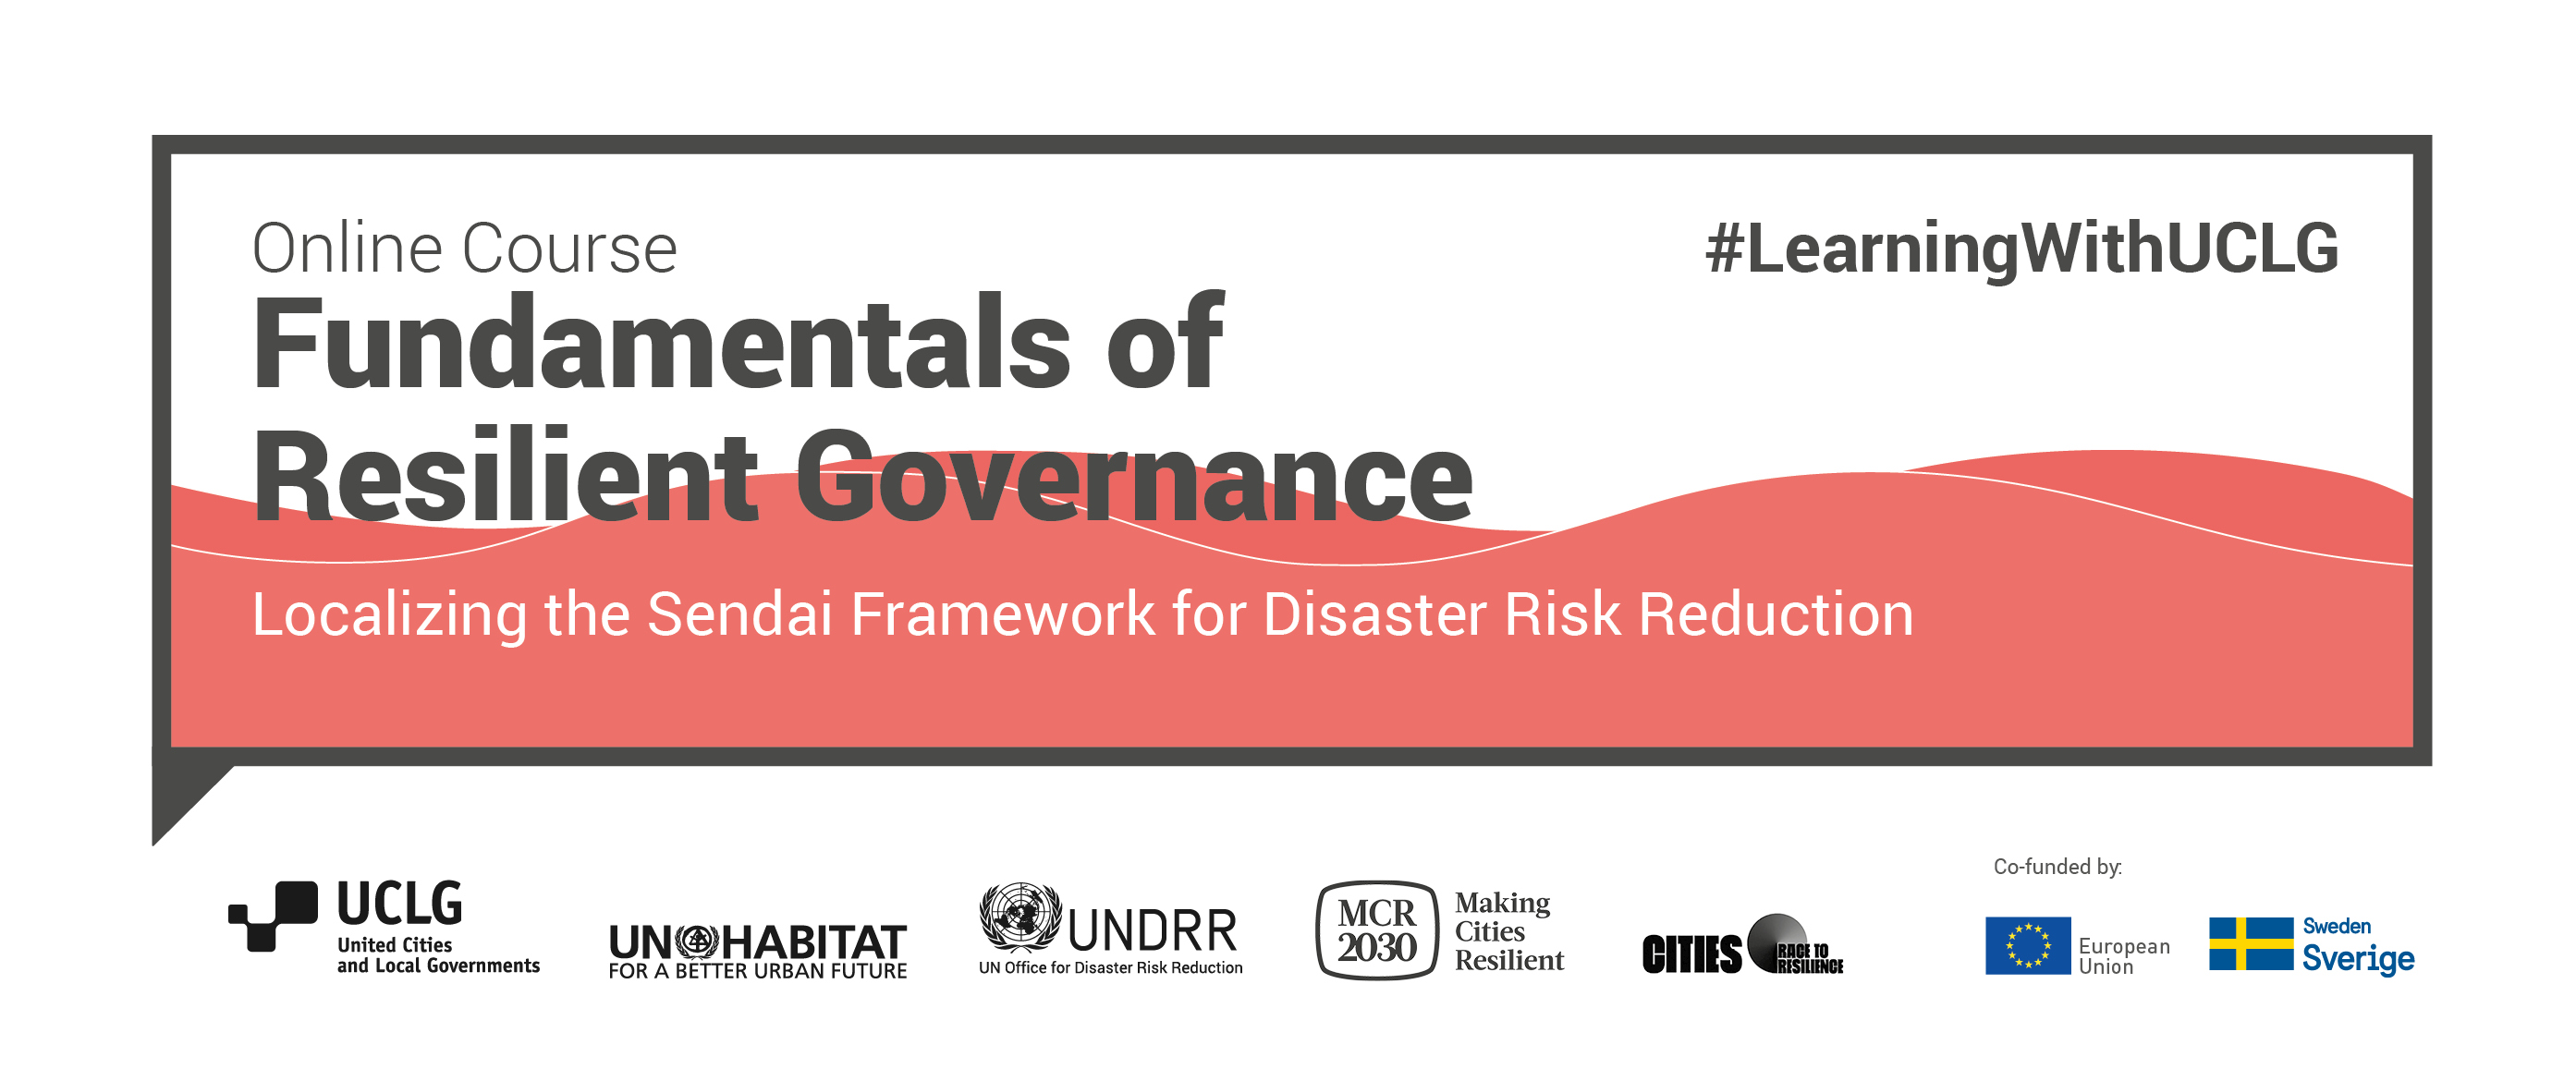 Fundamentos de la Gobernanza y el Desarrollo Resiliente - MOOC I de Aprendizaje sobre Resiliencia